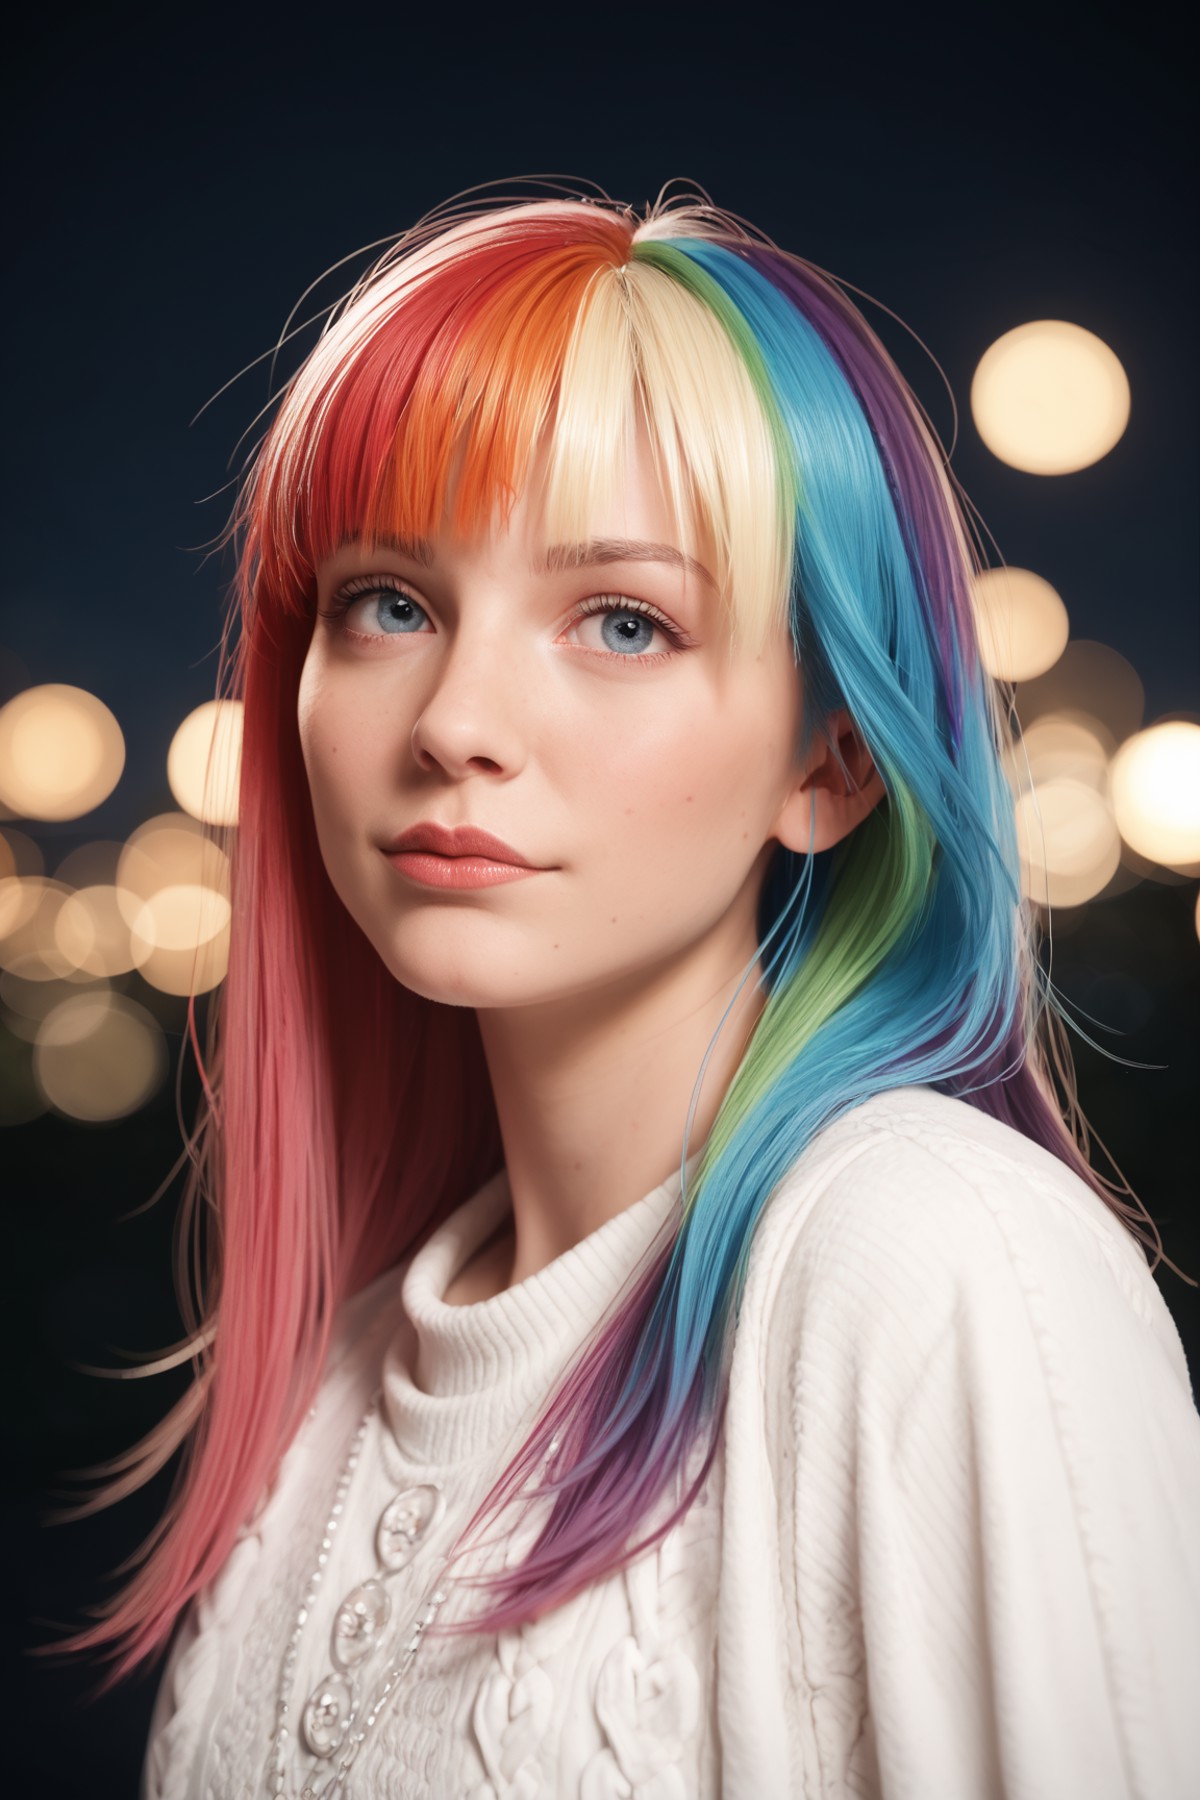 zPDXL2, zPDXLpg, zPDXLrl, beautiful girl with vivid (rainbow dye, colored hair:1.3), long hair, bangs, at a carnival at ni...